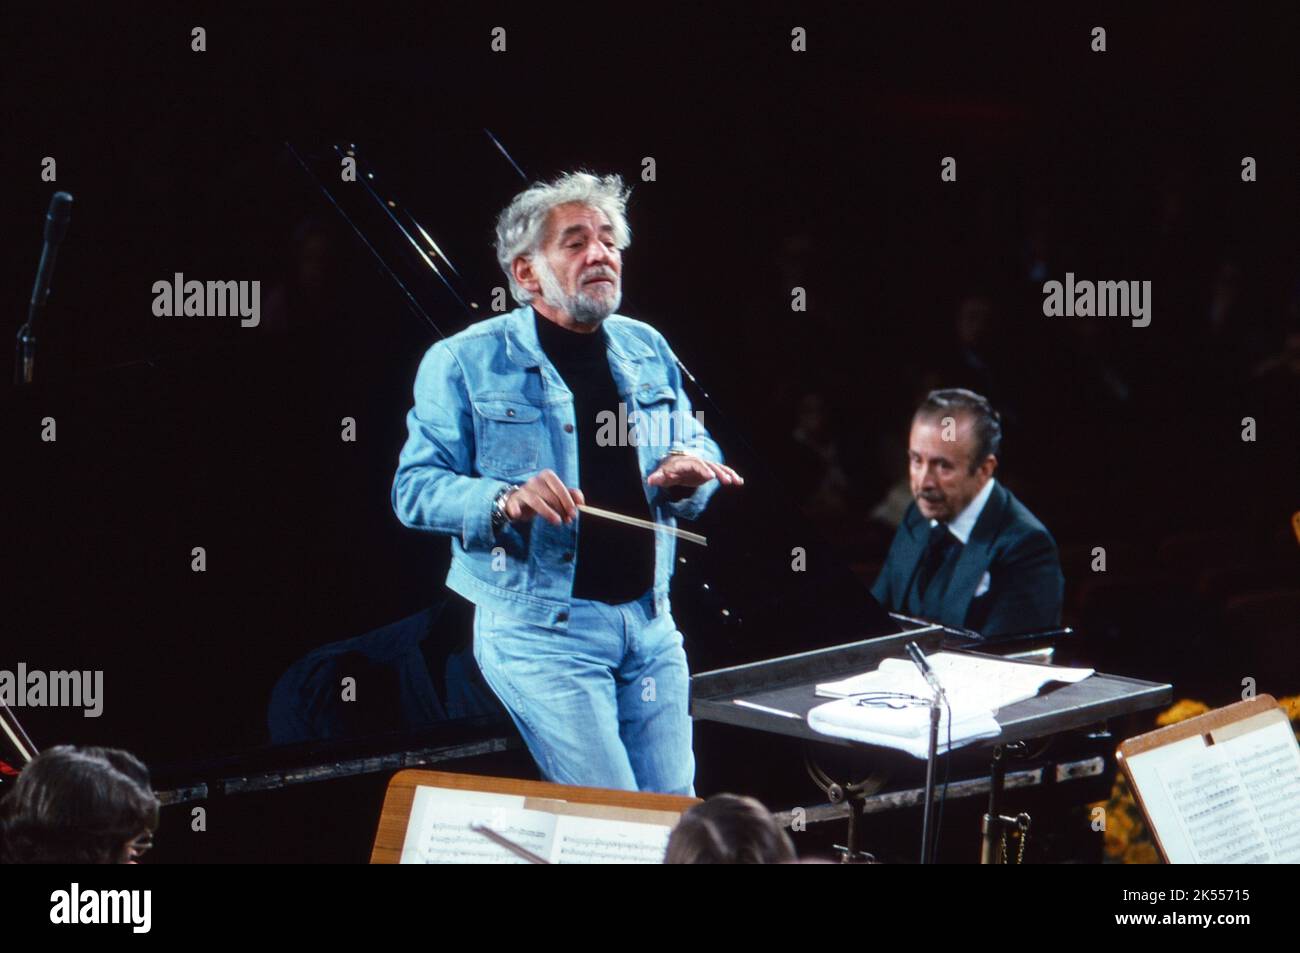 Leonard Bernstein, amerikanischer Komponist, Pianist und Dirigent, dirigiert Beethoven mit dem Symphonieorchester des Bayerischen Rundfunks in München, Pianist Claudio Arrau, hinten rechts. Deutschland 1977. Stock Photo